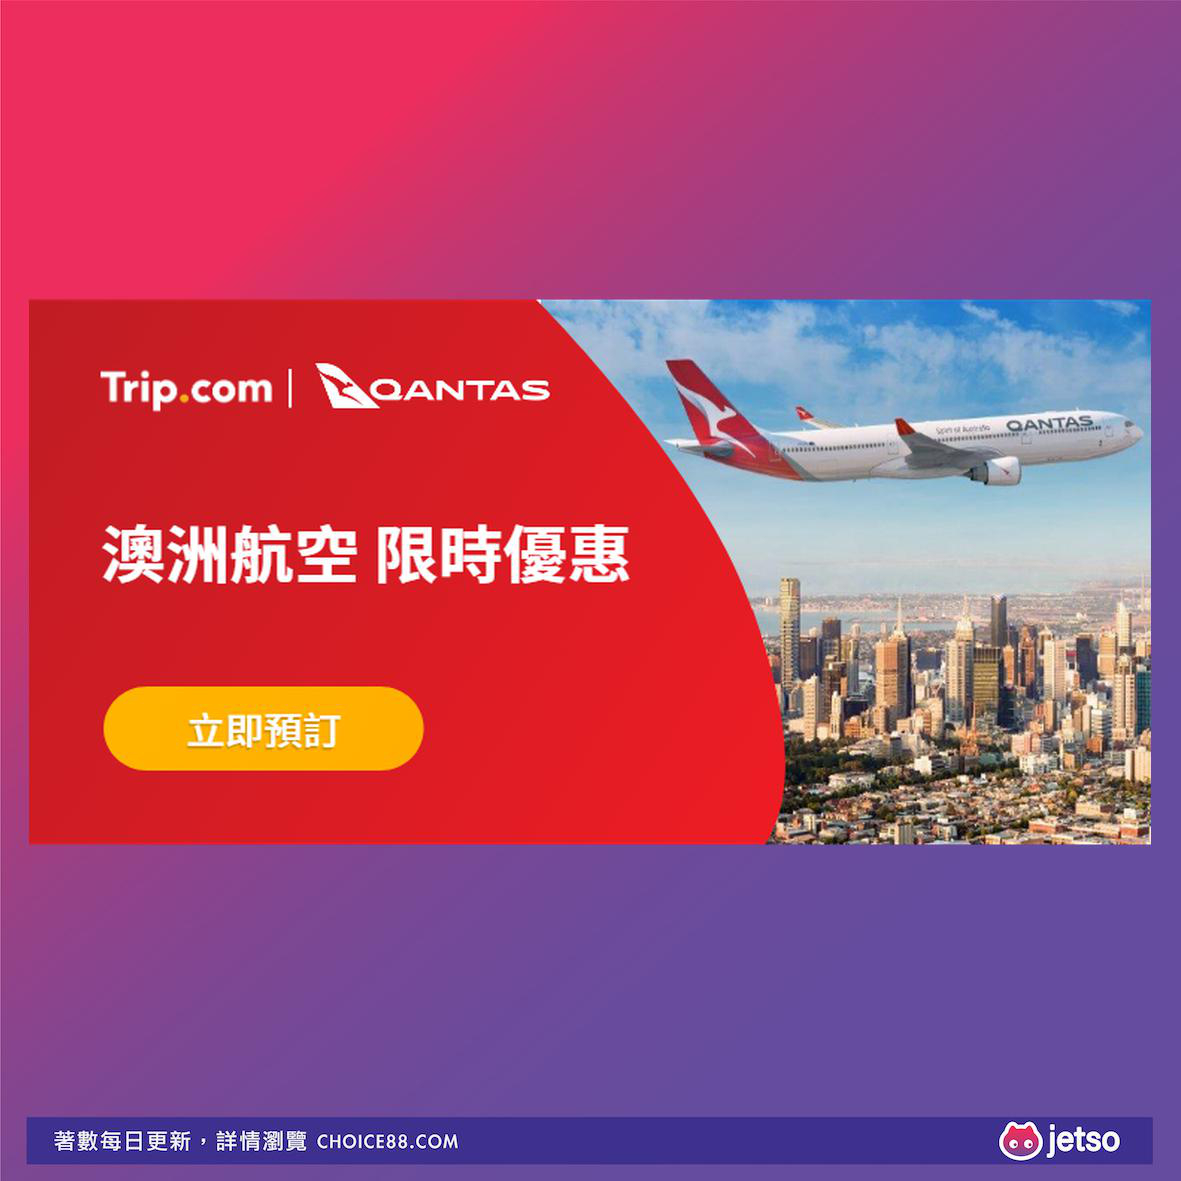 Trip.com : 澳洲航空限時優惠